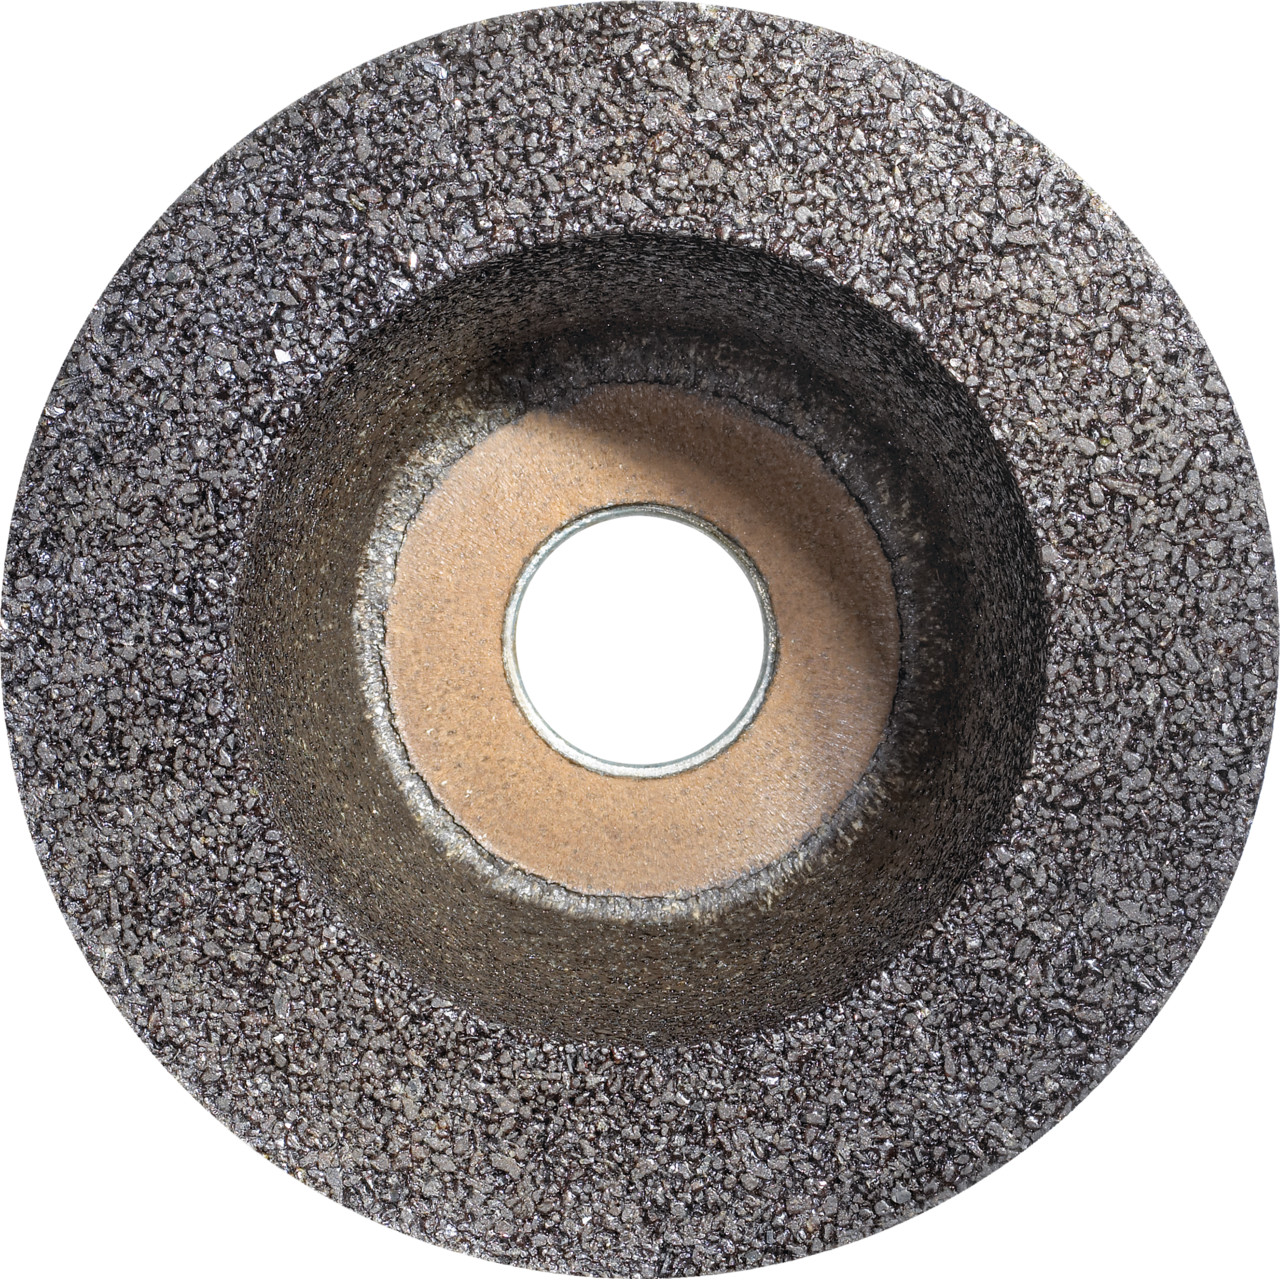 Tyrolit Tazza in resina D/JxTxGE 130/90x55xM14 Per pietra, forma: 11ZB ruota a tazza, Art. 310994